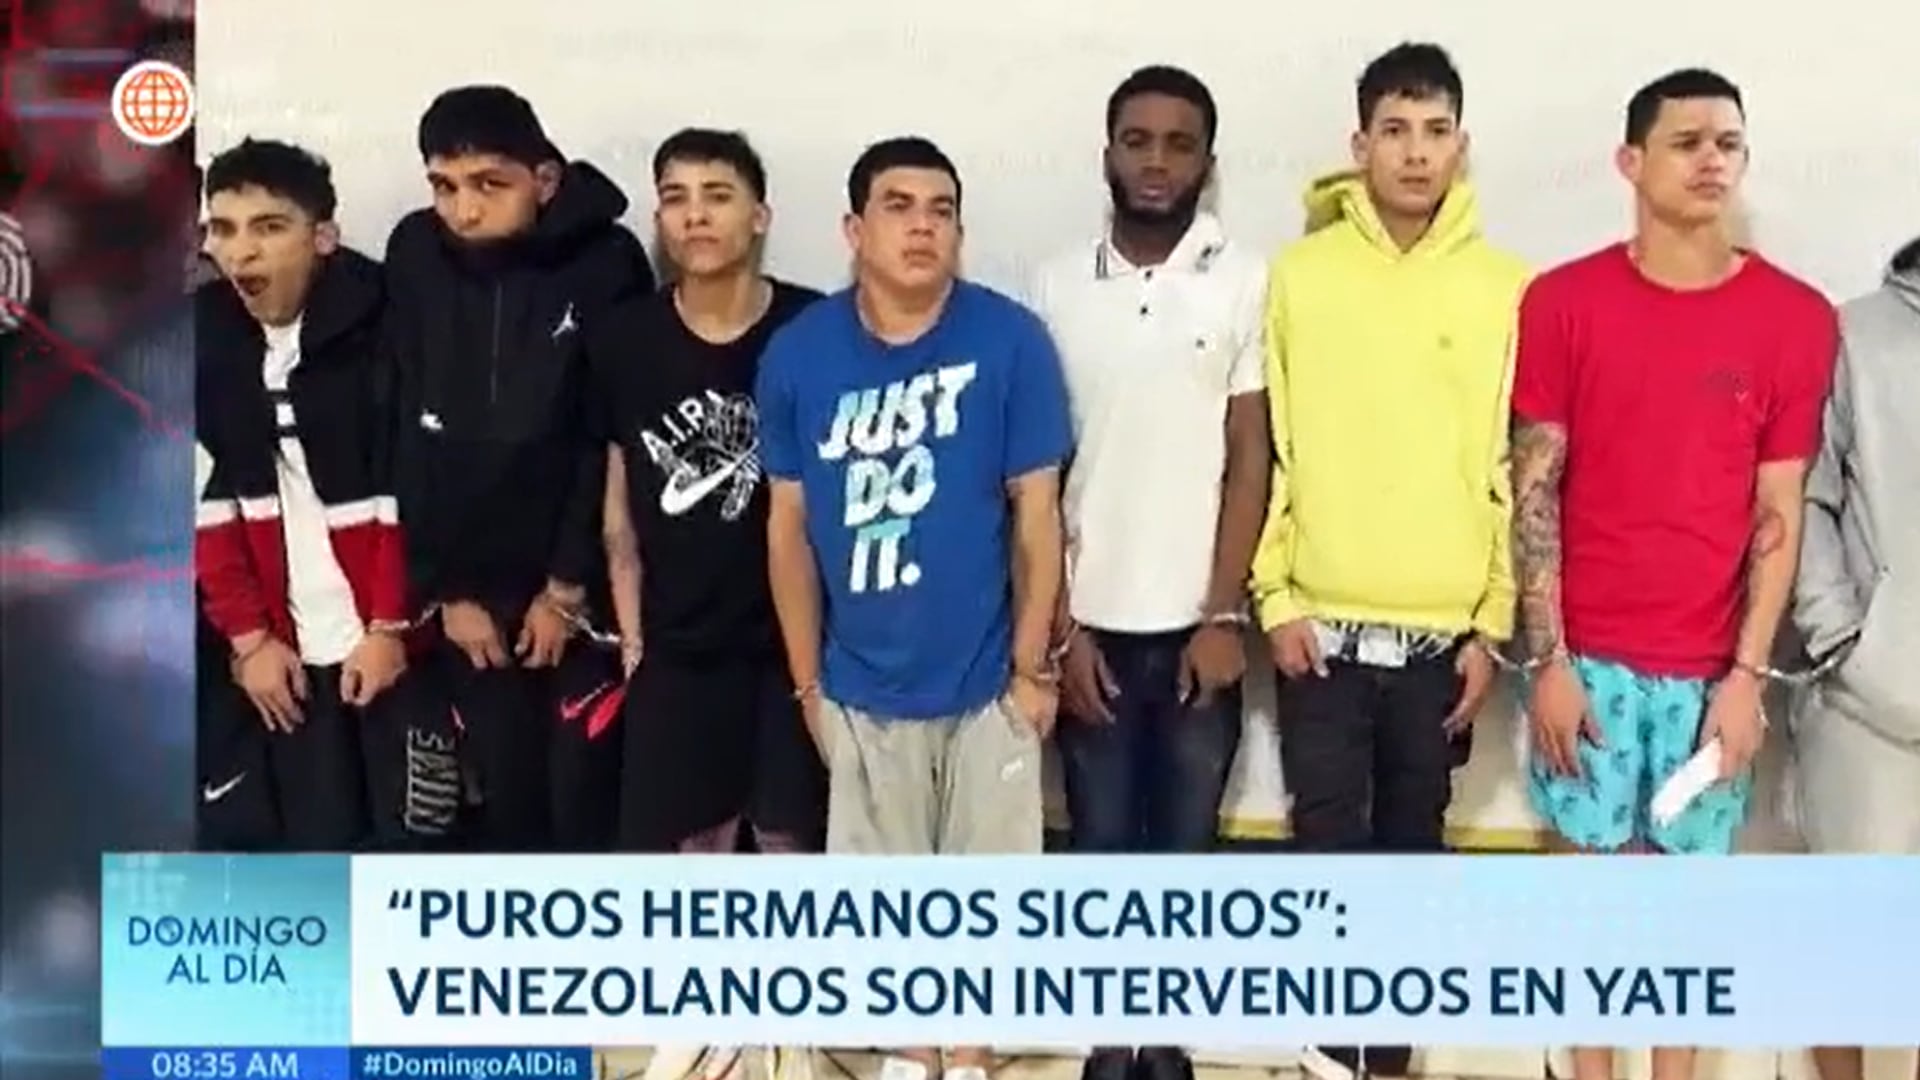 Domingo al día fue uno de los varios dominicales que informó sobre la captura de Freddy Daniel Toro Acosta y otros 18 ciudadanos venezolanos, varios de ellos vinculados a los Puros Hermanos Sicarios.